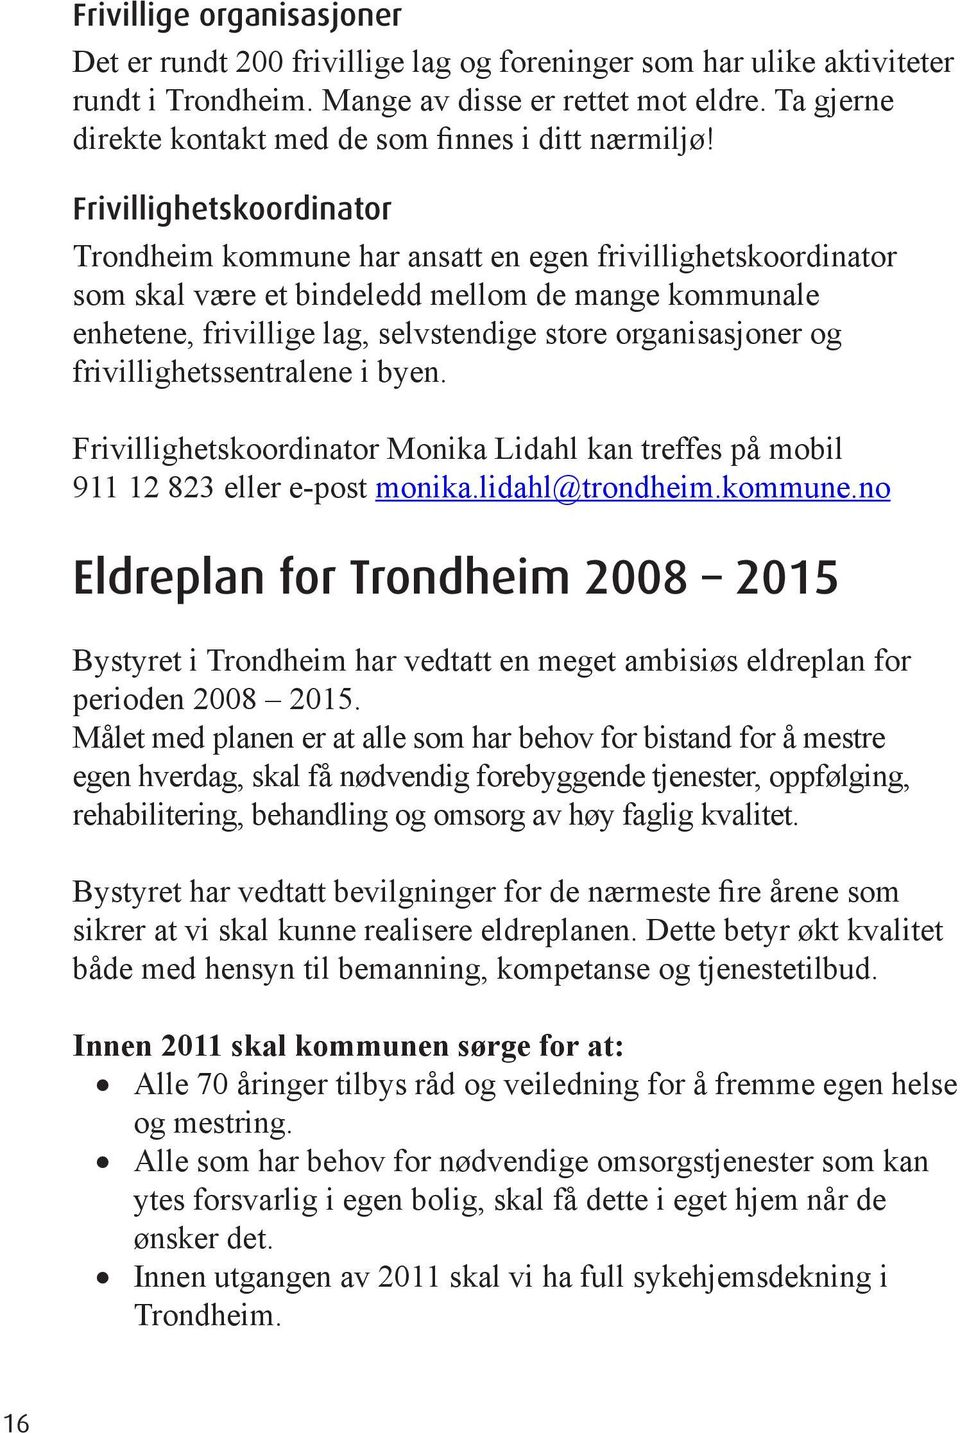 Frivillighetskoordinator Trondheim kommune har ansatt en egen frivillighetskoordinator som skal være et bindeledd mellom de mange kommunale enhetene, frivillige lag, selvstendige store organisasjoner